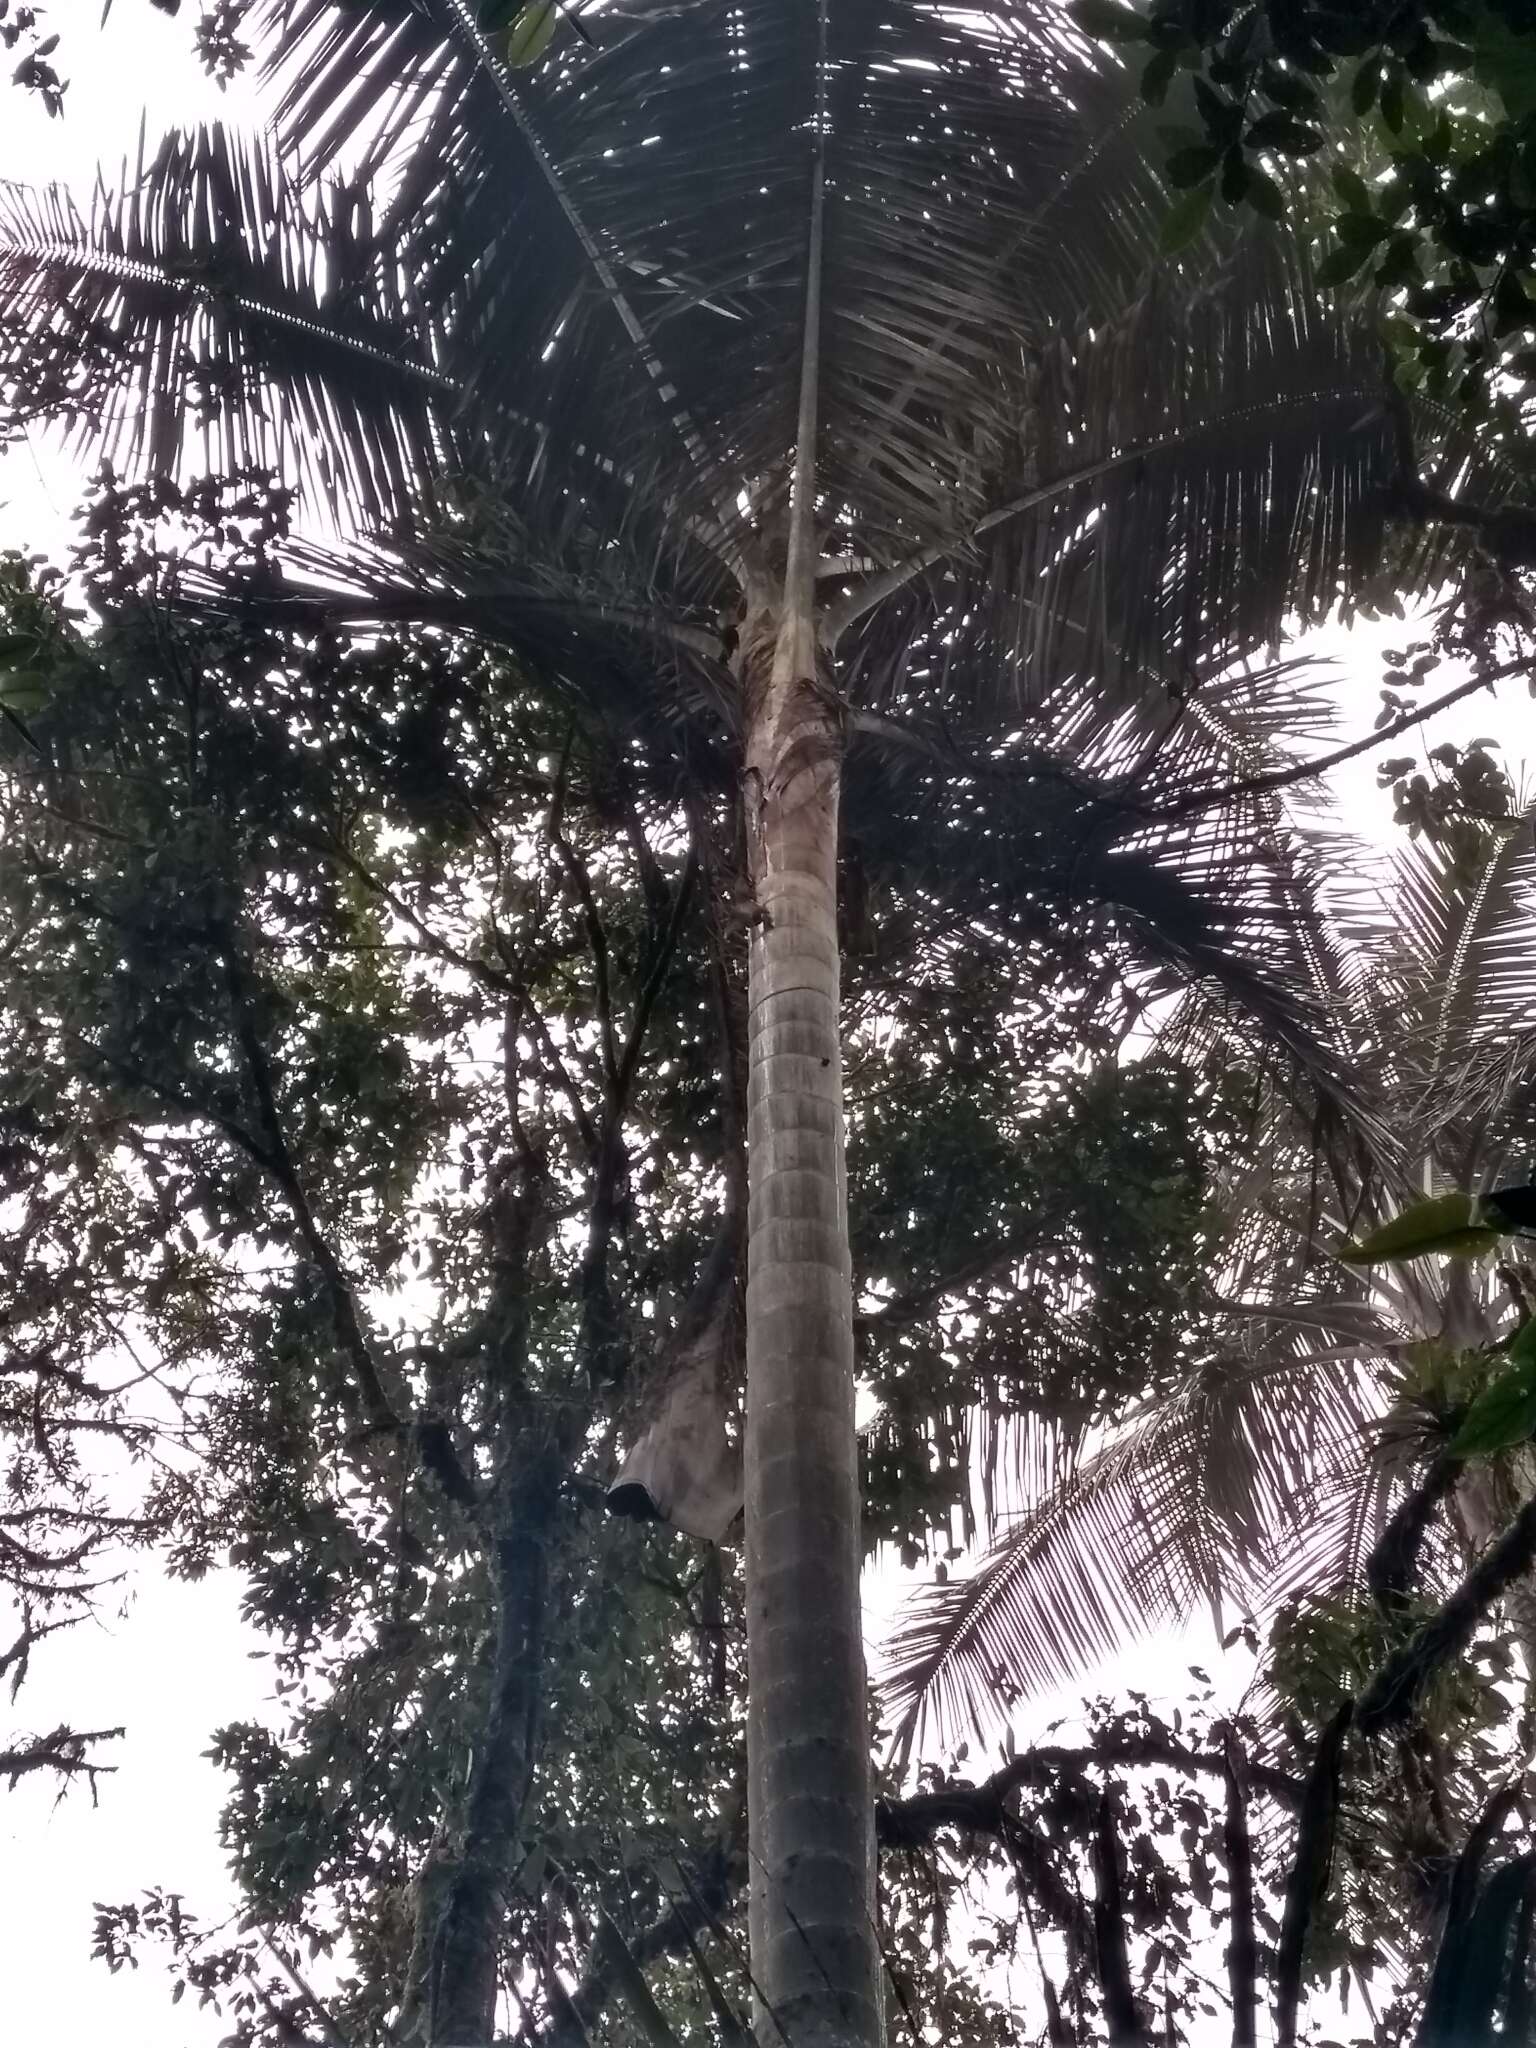 Image of Pumbo wax palm